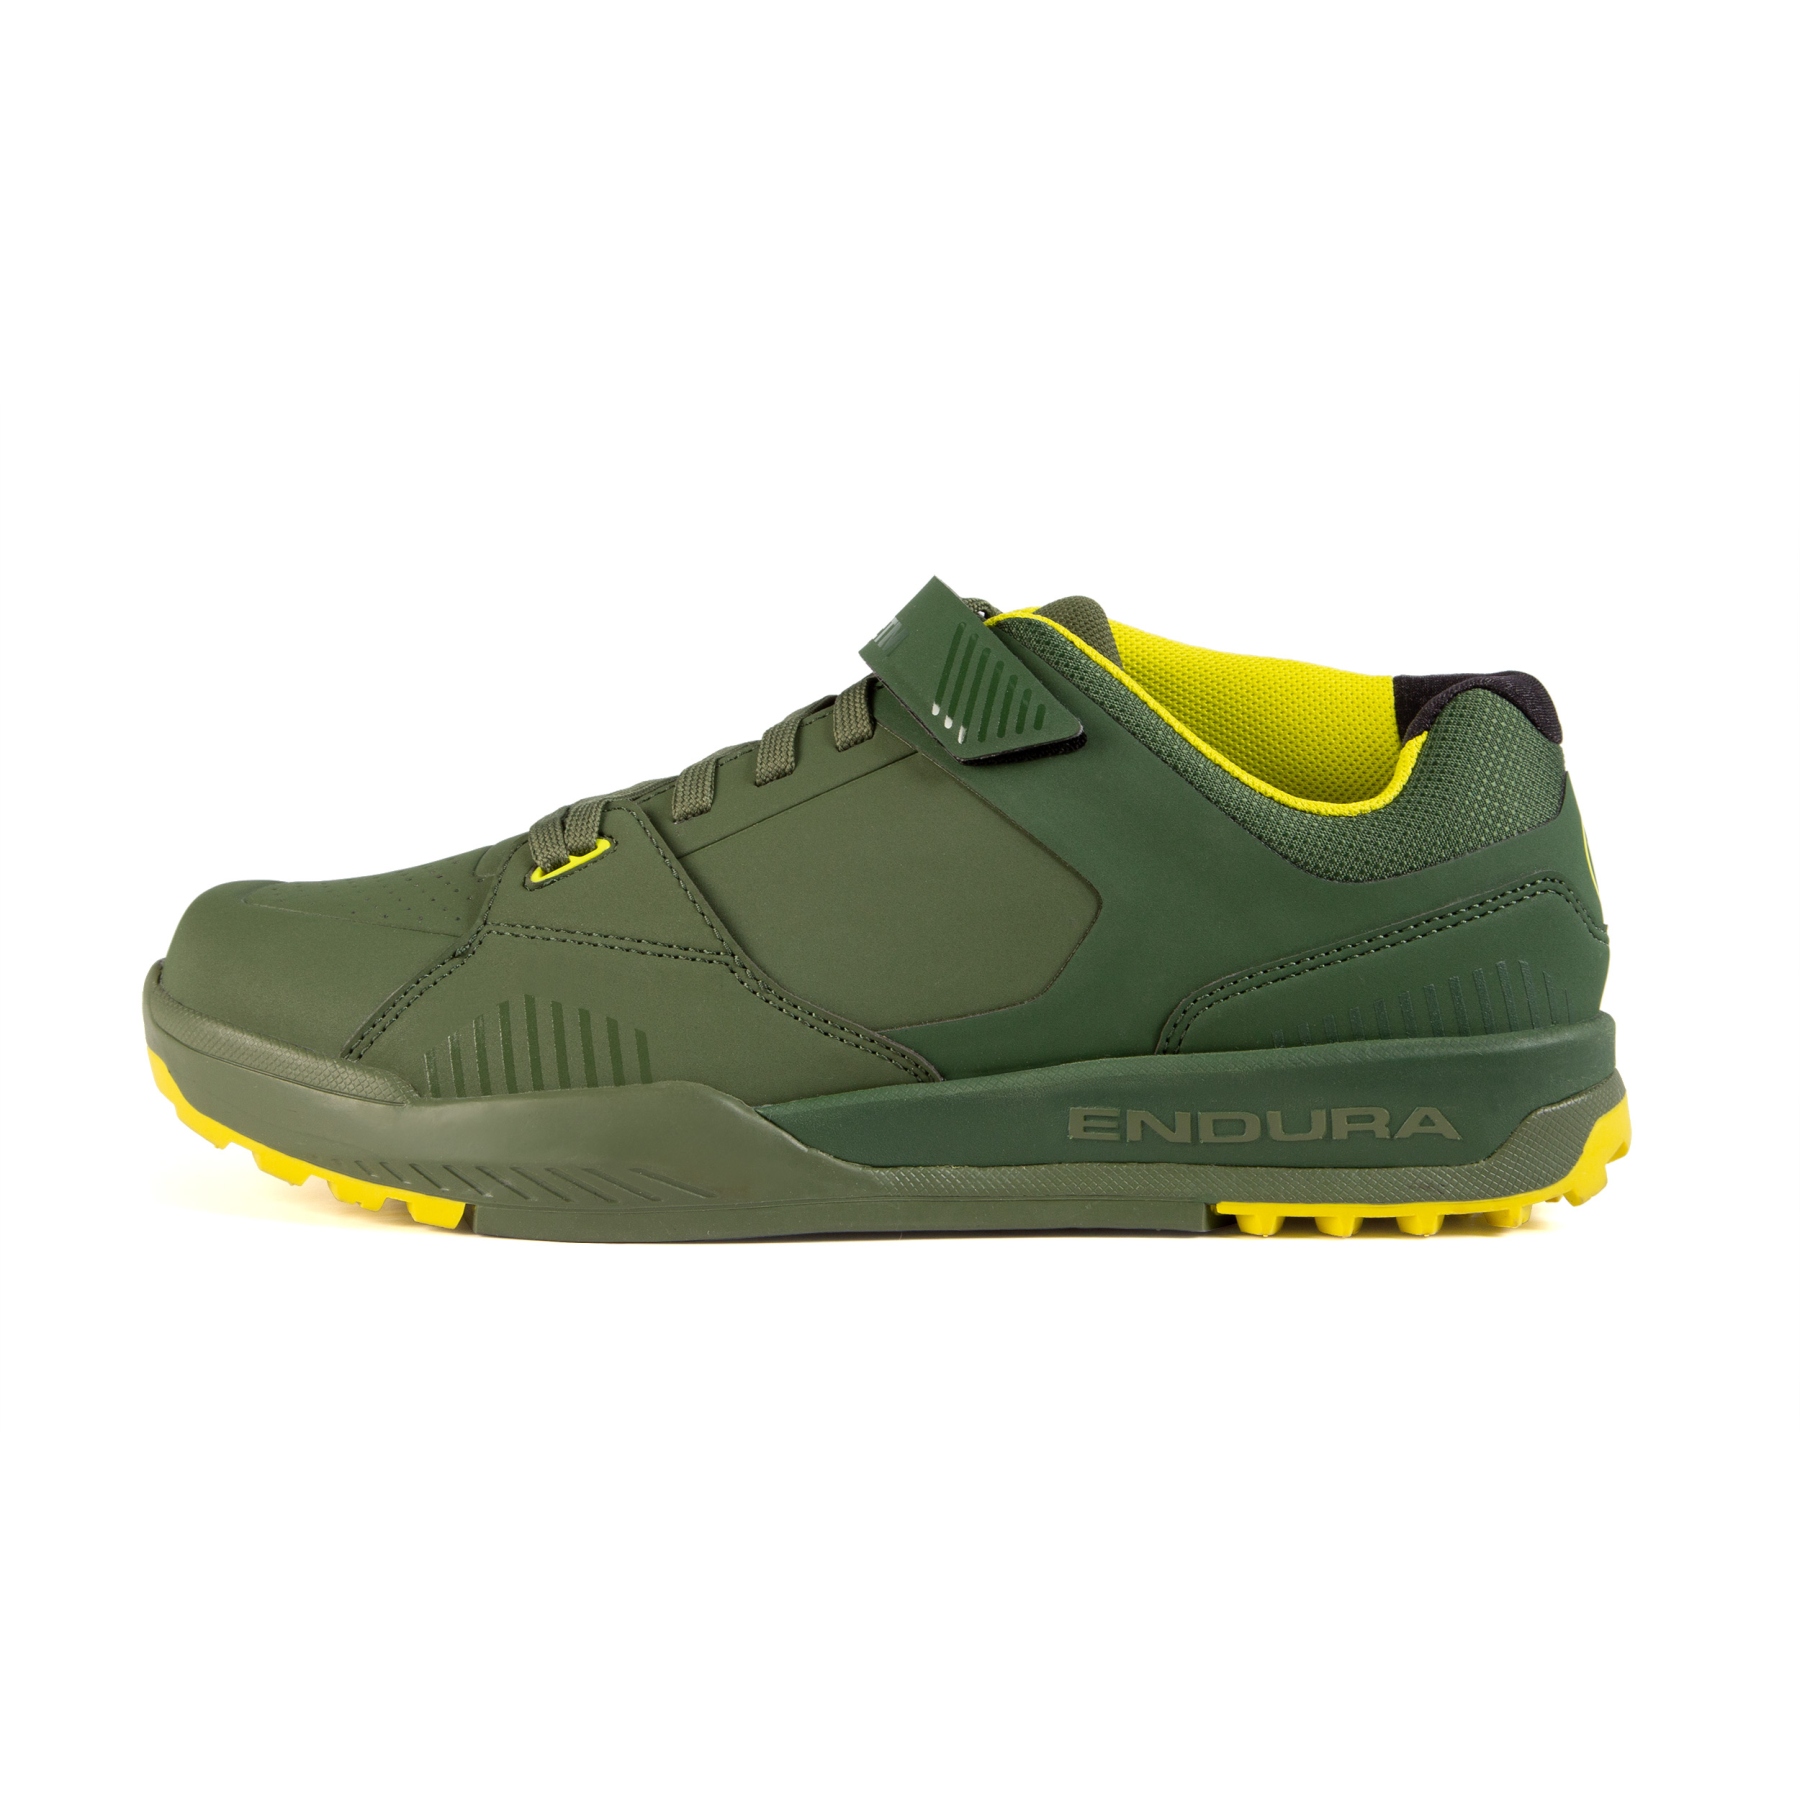 Produktbild von Endura MT500 Burner Clipless Schuhe - waldgrün